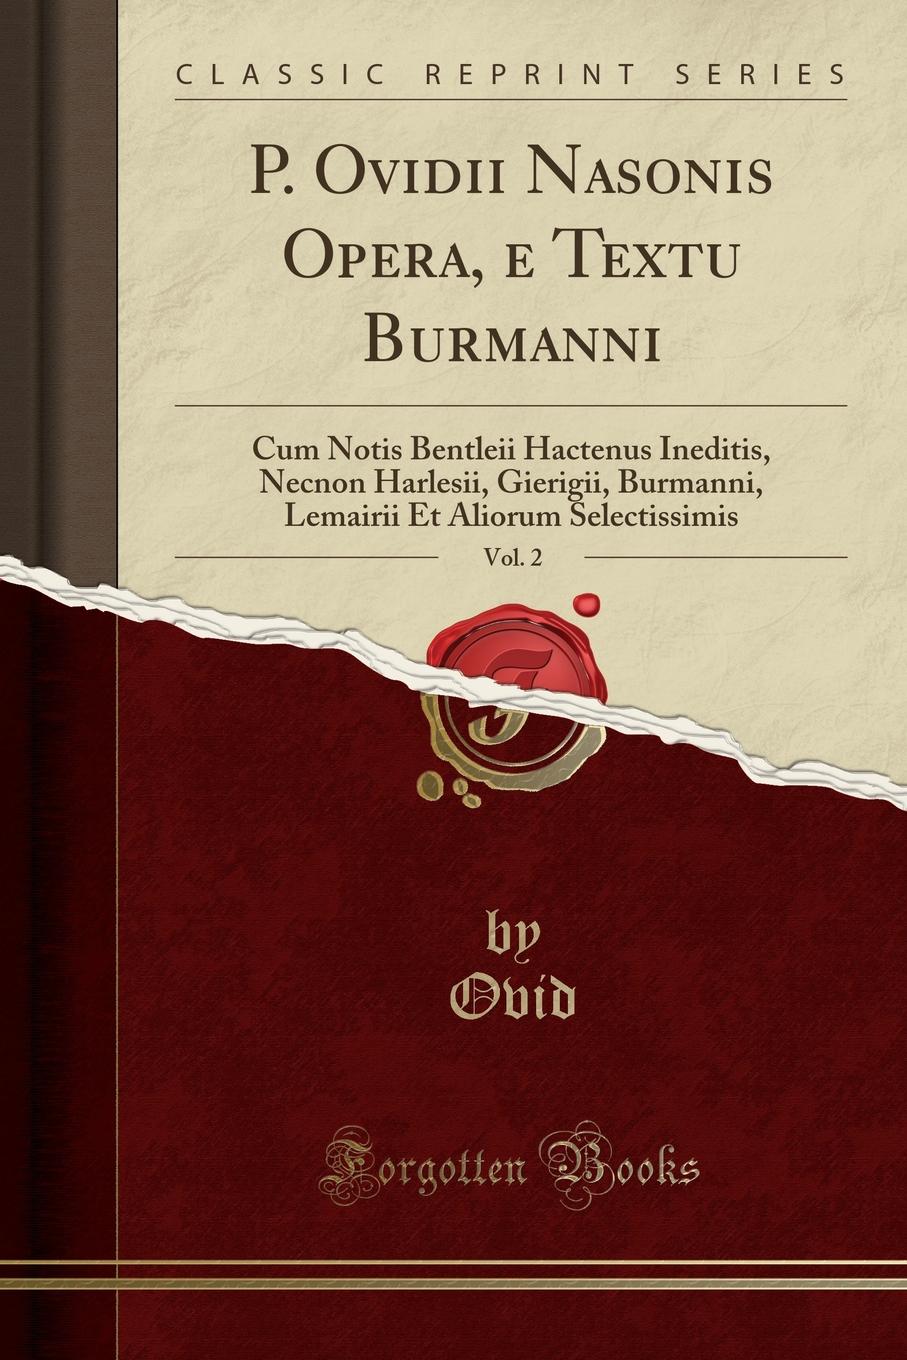 P. Ovidii Nasonis Opera, e Textu Burmanni, Vol. 2. Cum Notis Bentleii Hactenus Ineditis, Necnon Harlesii, Gierigii, Burmanni, Lemairii Et Aliorum Selectissimis (Classic Reprint)